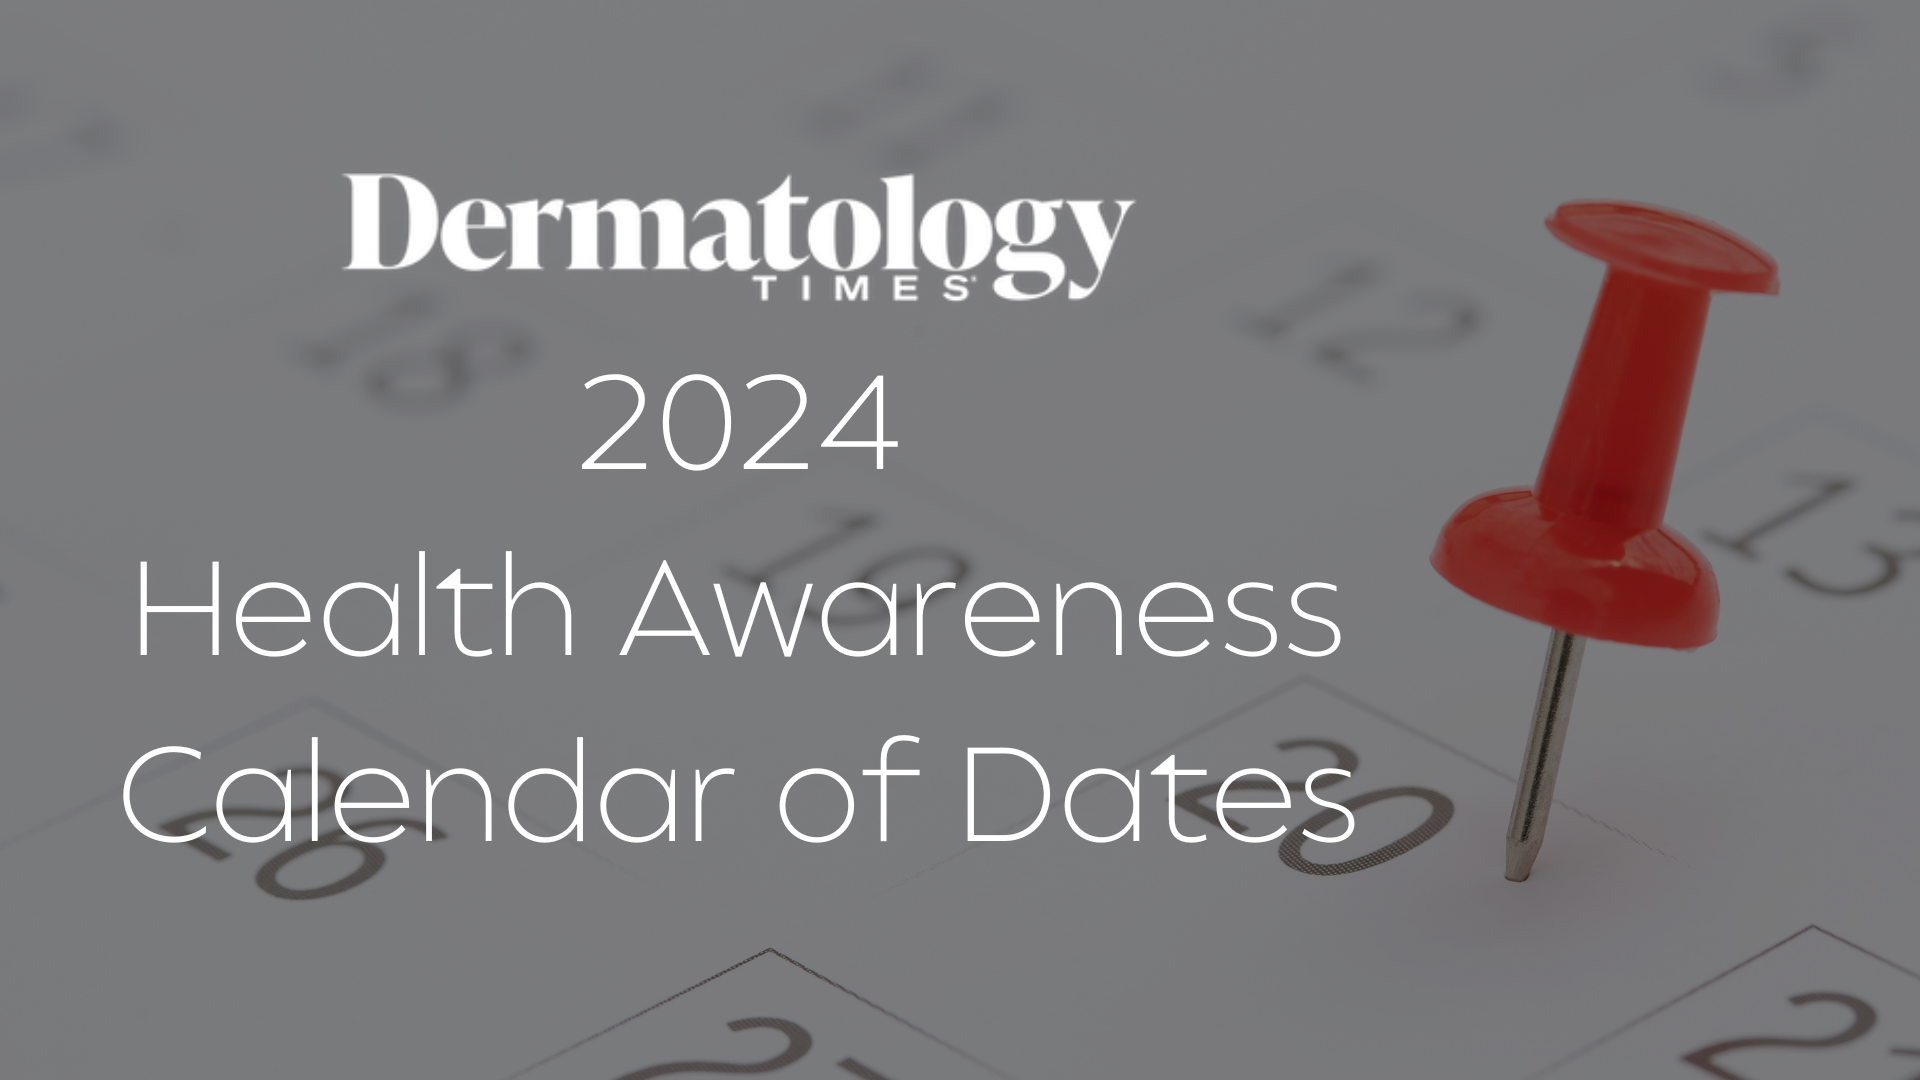 Dermatology Times' 2024 Health Awareness Calendar of Dates